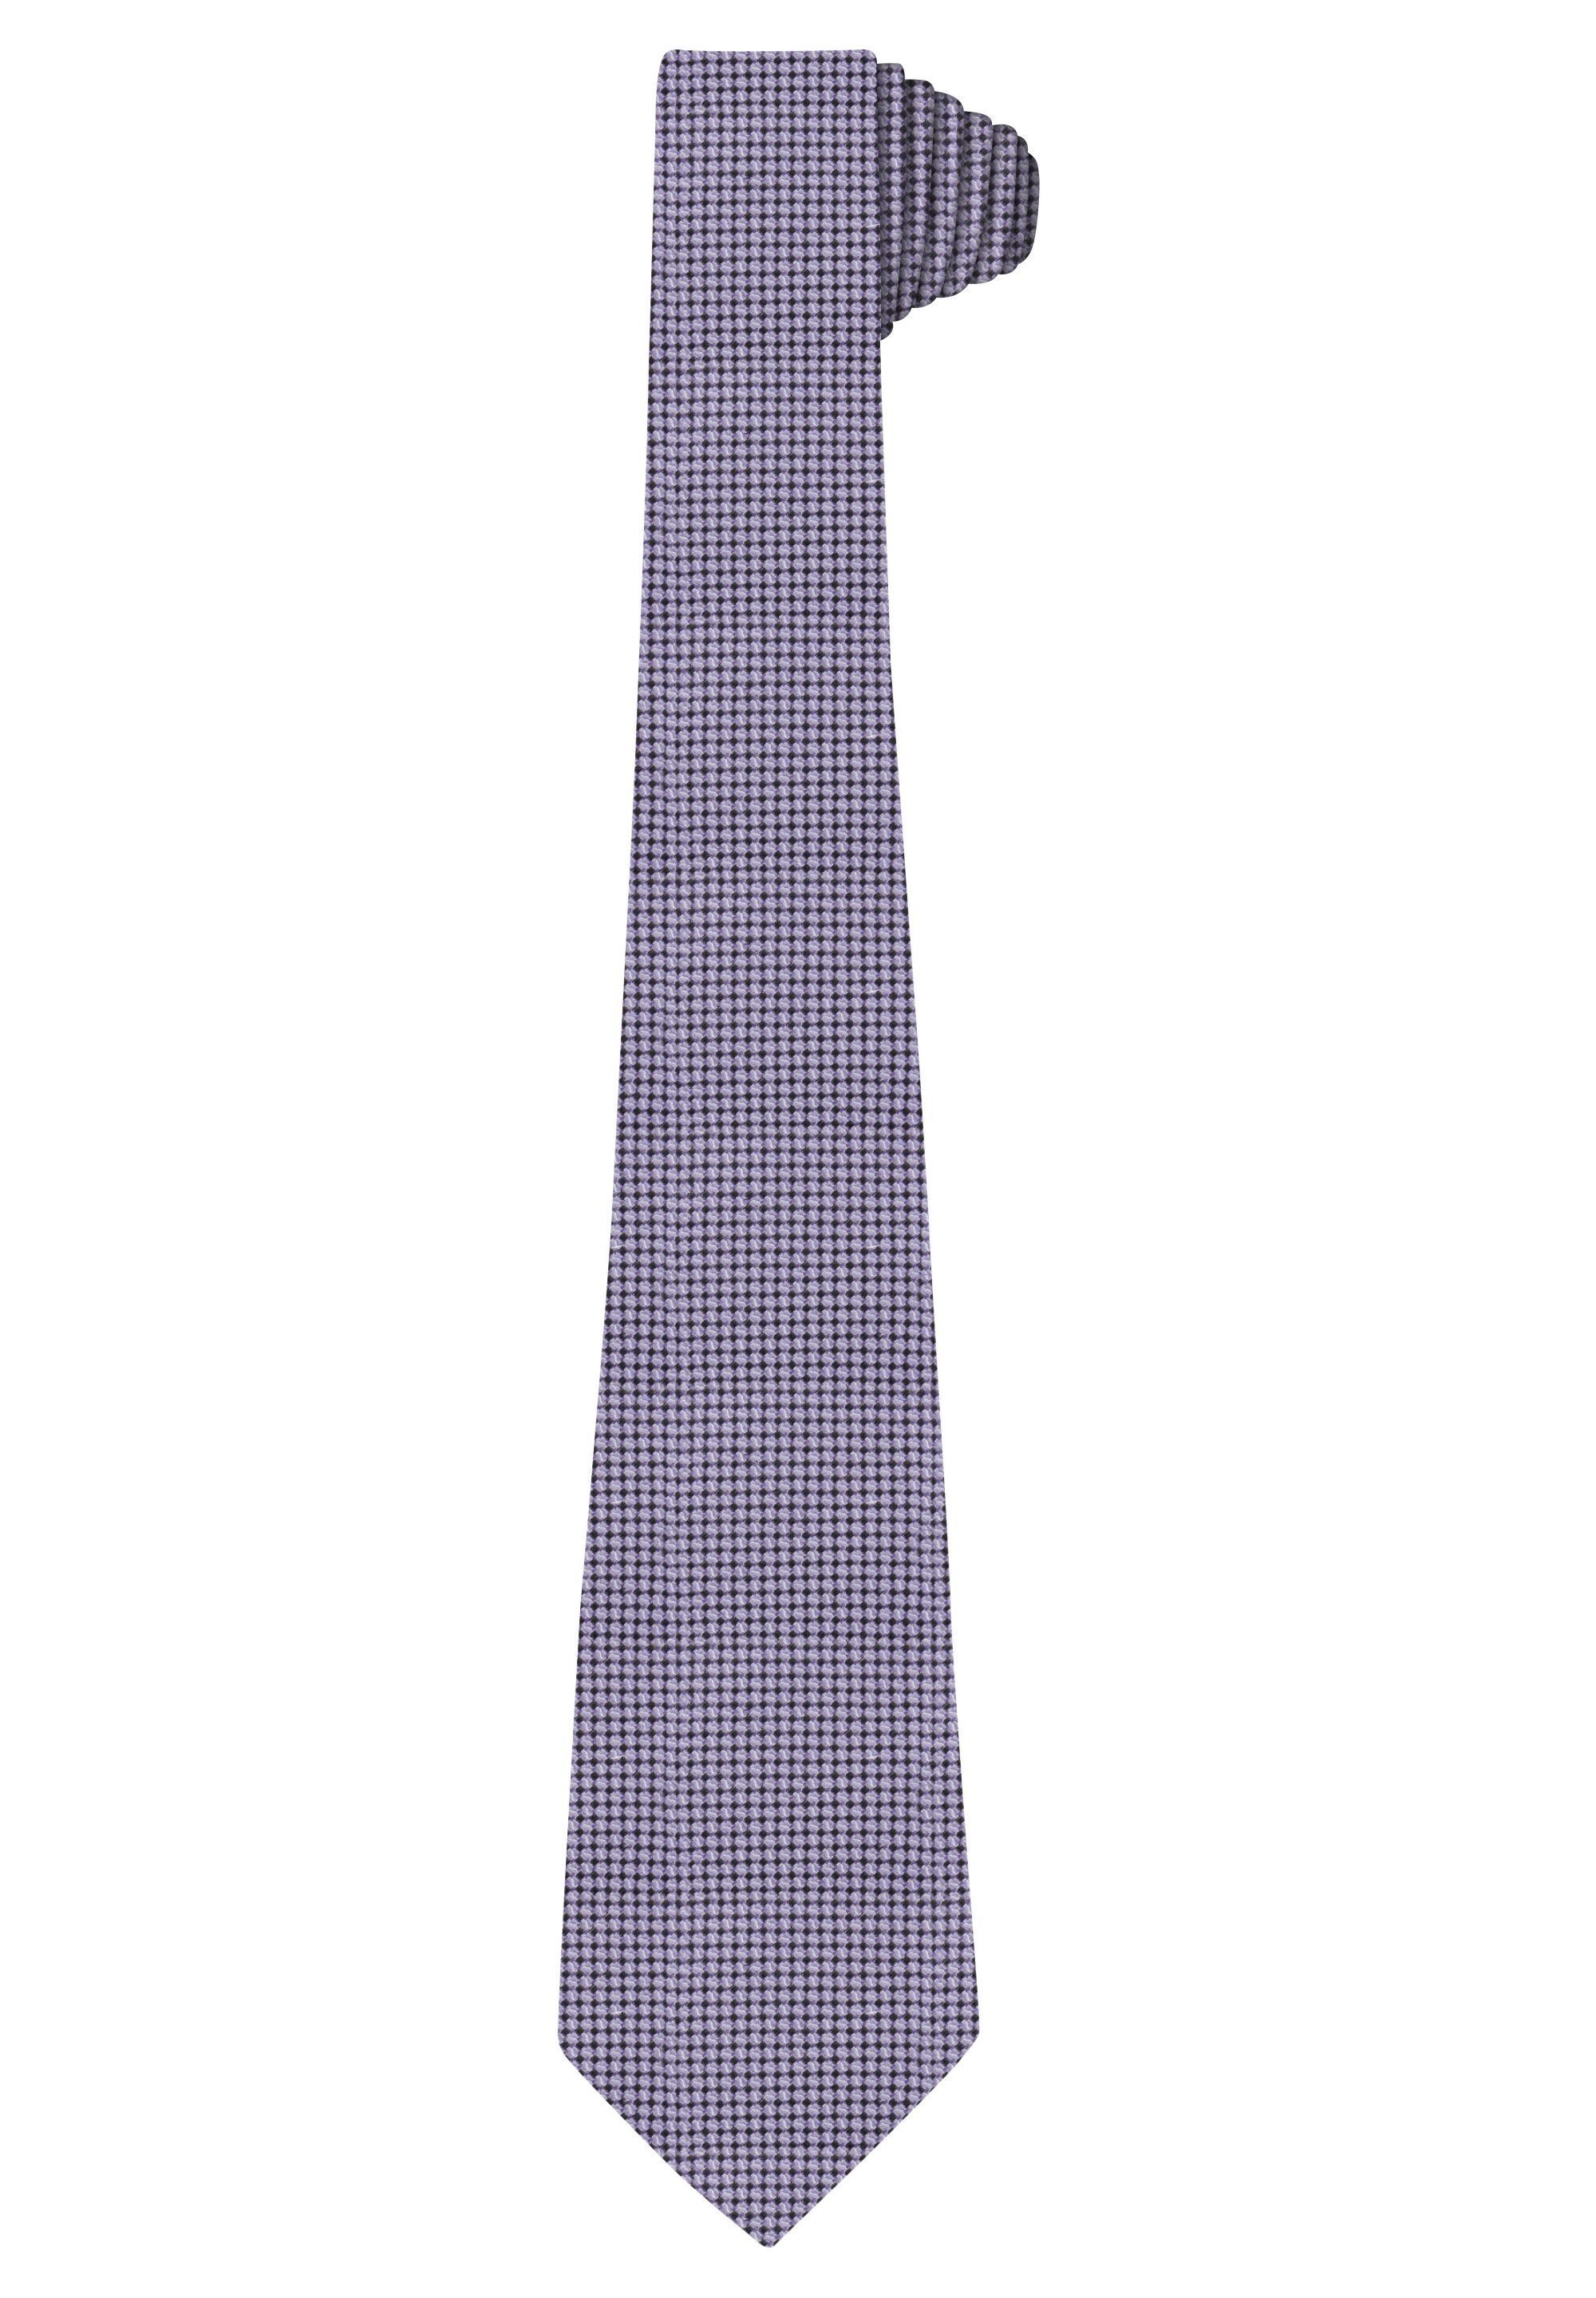 HECHTER PARIS Krawatte mit Modische Musterung orchid | Breite Krawatten